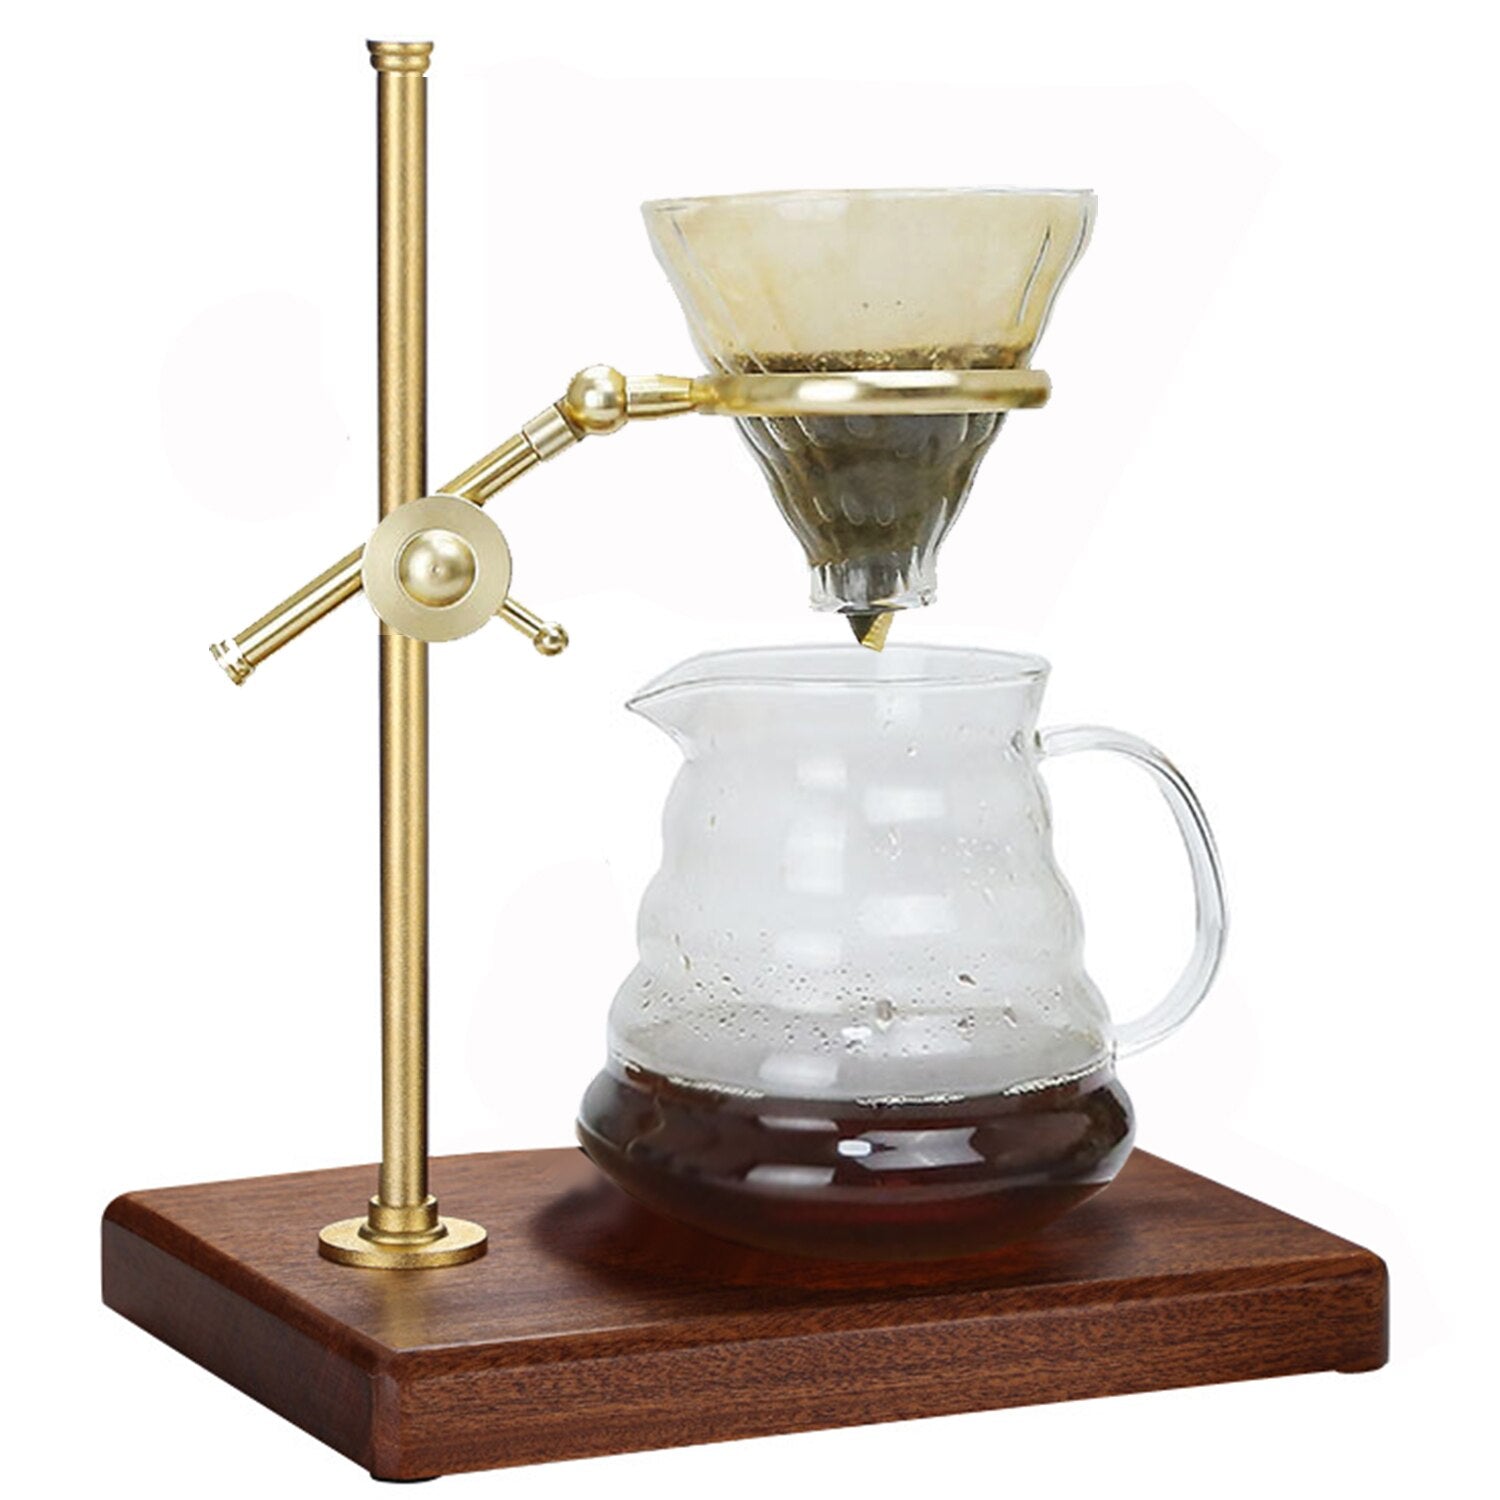 pour over coffee maker set glass carafe 600ml No Filter